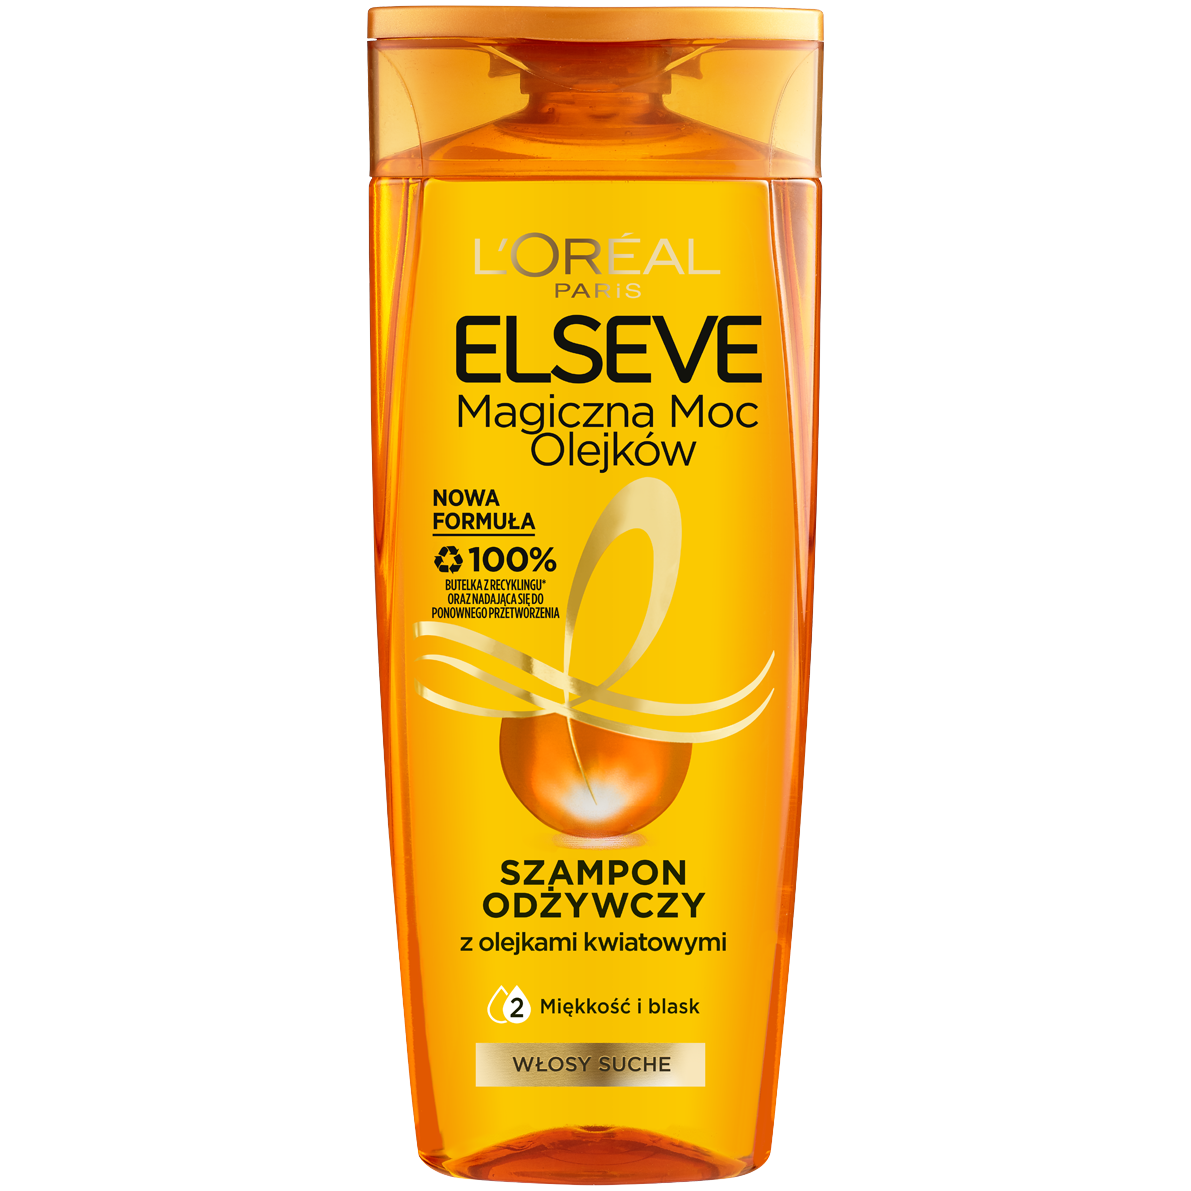 L'Oréal Paris Elseve Magiczna Moc Olejków szampon do włosów odżywczy, 400  ml | hebe.pl